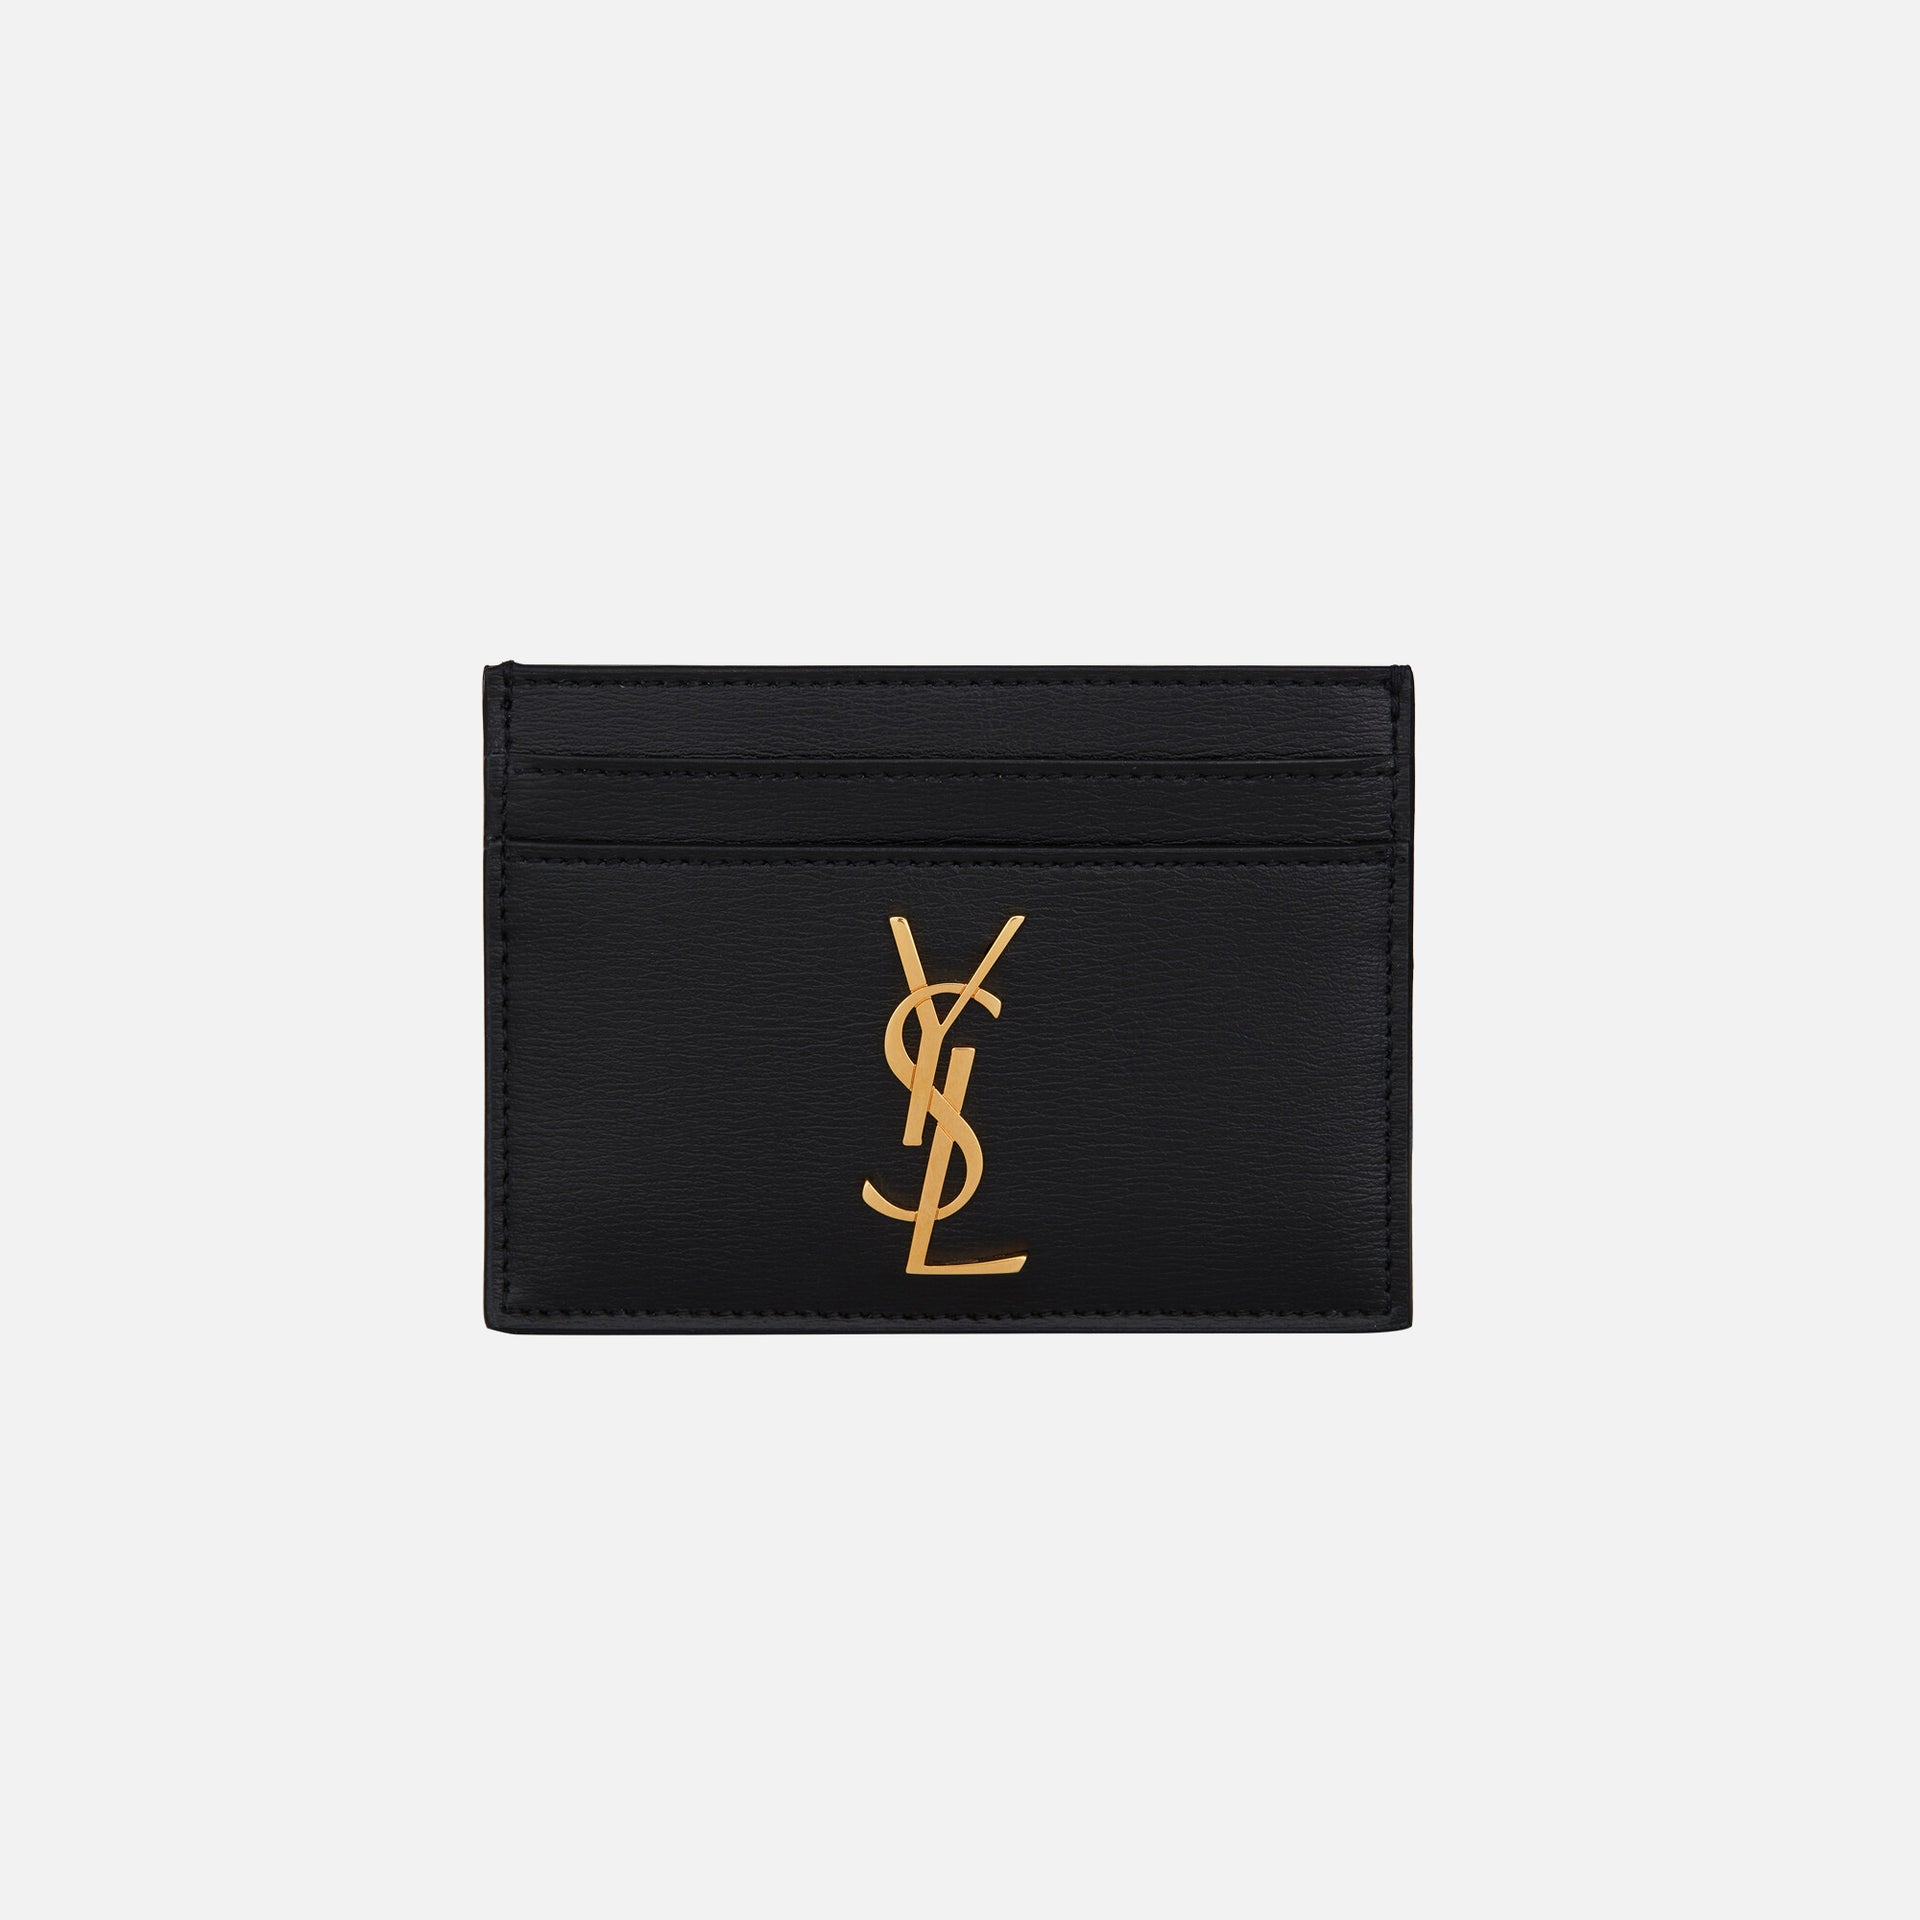 Saint Laurent Credit Card Case Large YSL - Black